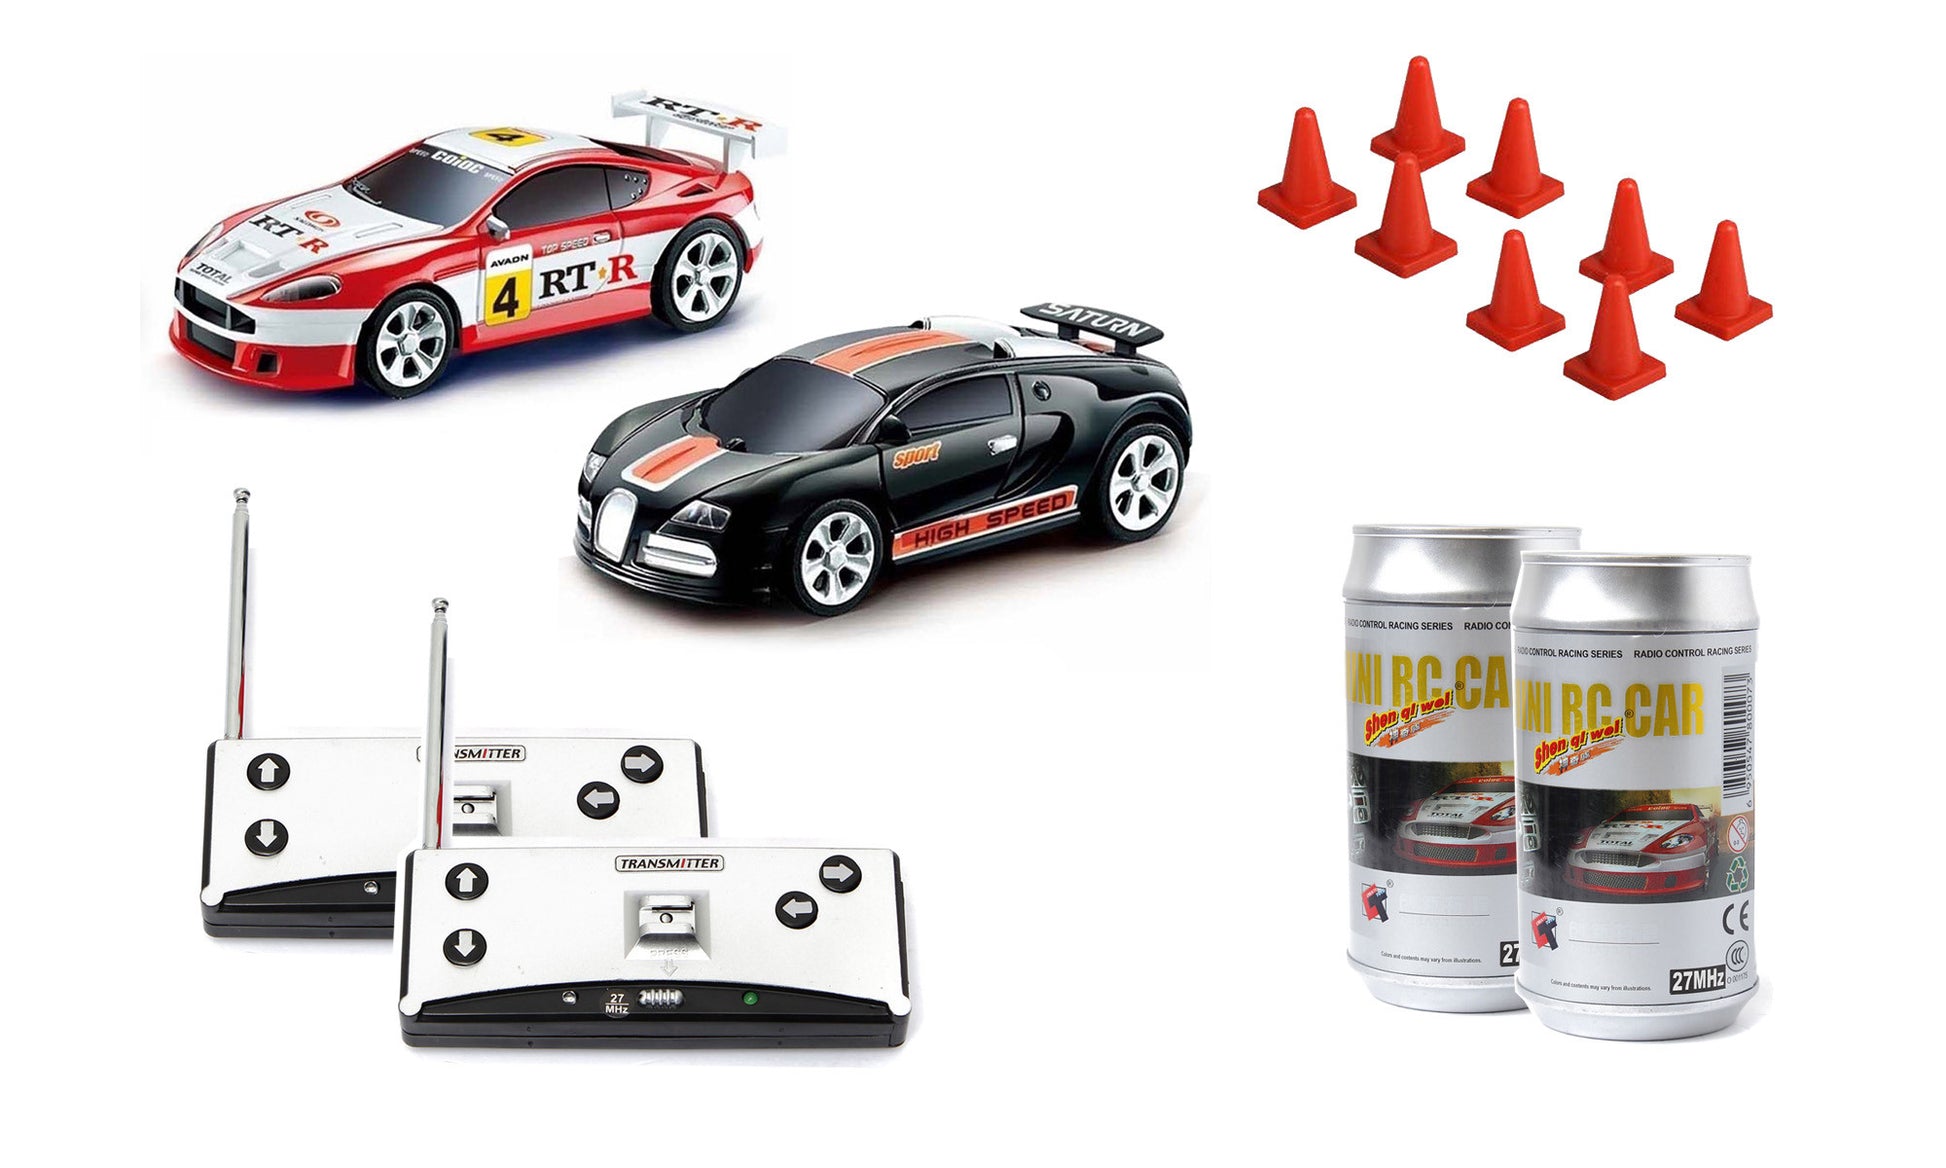 Mini RC Car - 2 Pack – Mini RC Cars & Toys